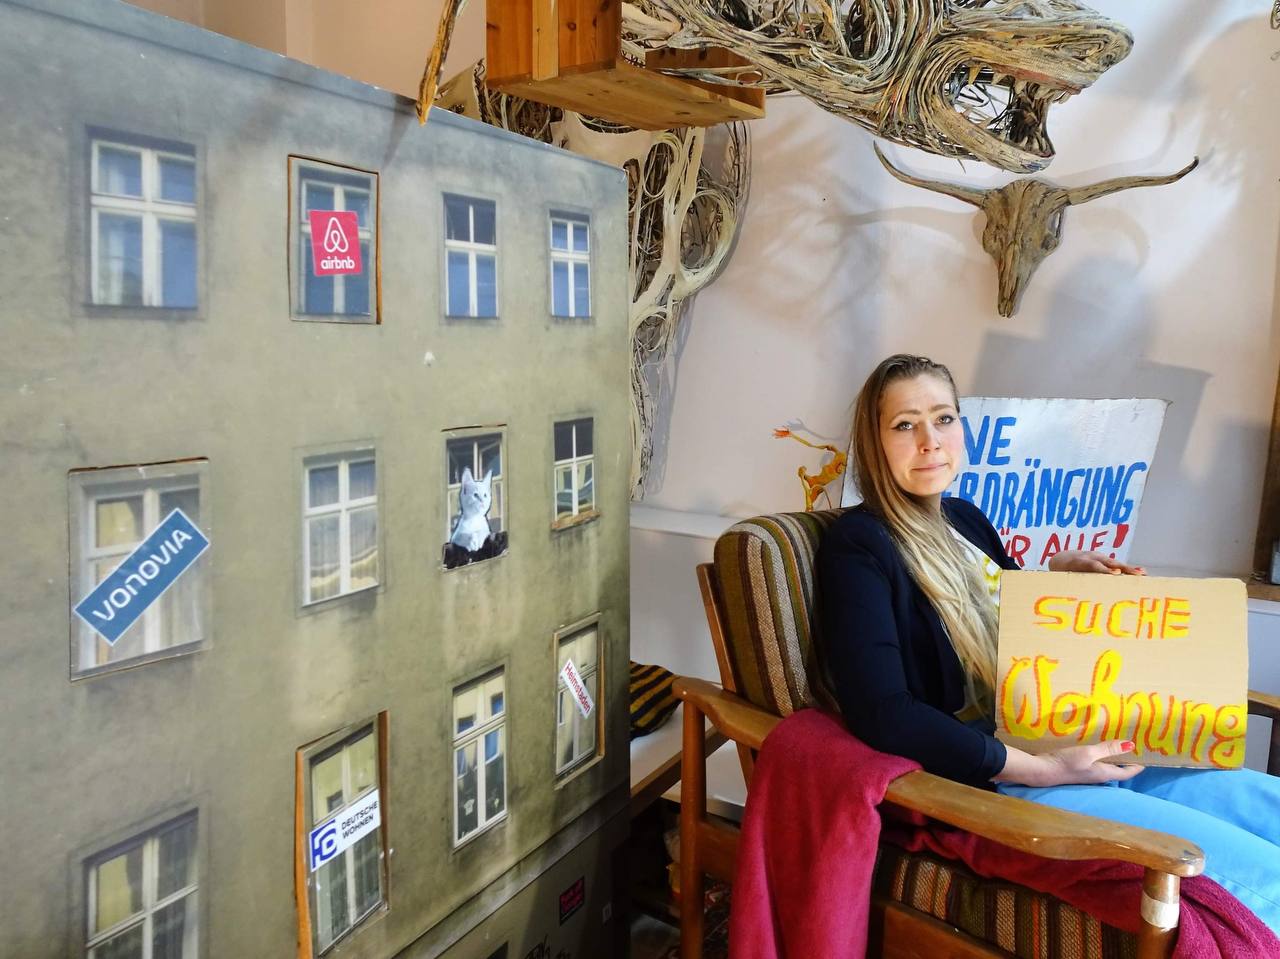 Ungewöhnliche Wohnungssuche in Kreuzberg: Joana V. sitzt in Schaufenster, um auf die Wohnkrise aufmerksam zu machen